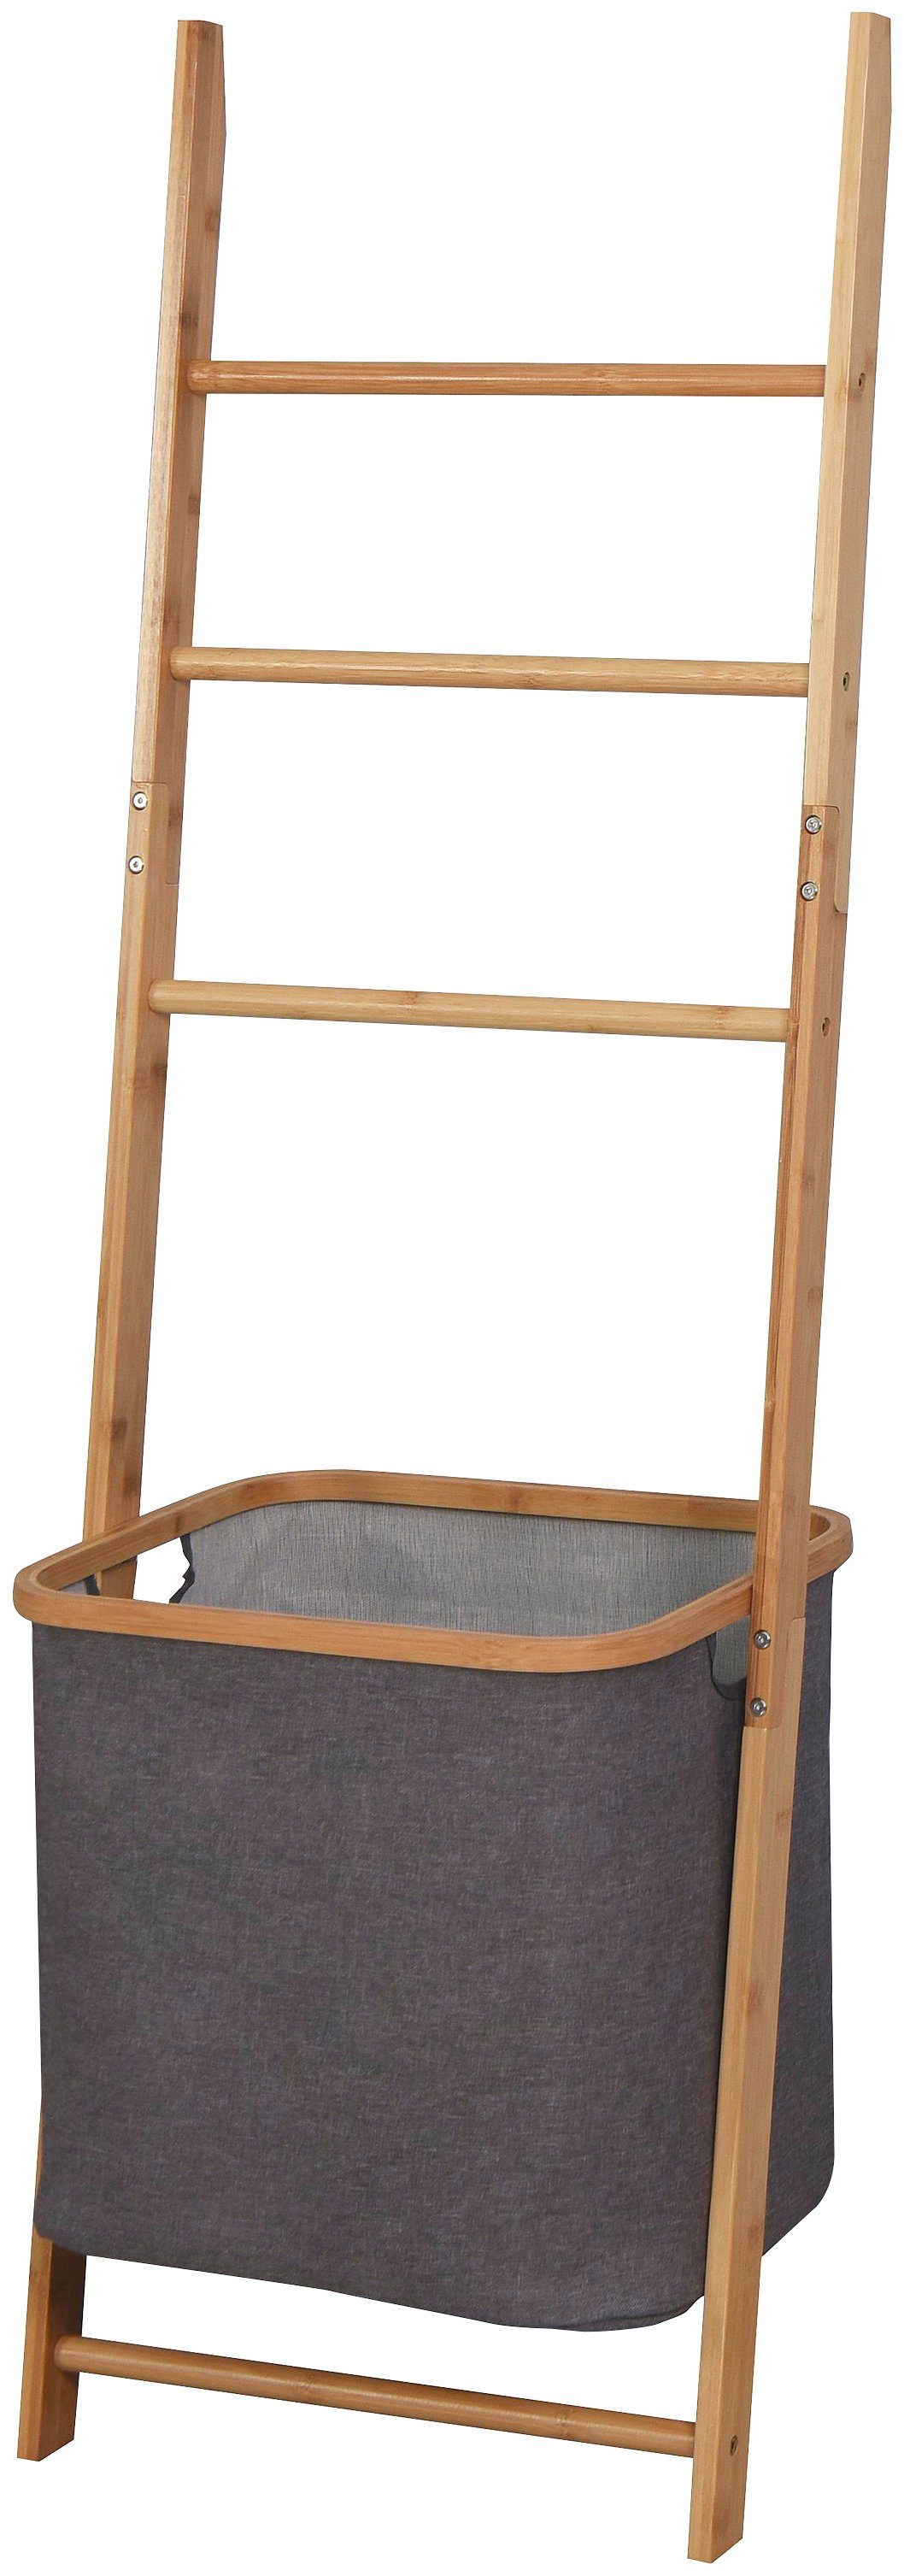 welltime Wäschesack, Bambus-Handtuchleiter mit integriertem Wäschesammler-Otto